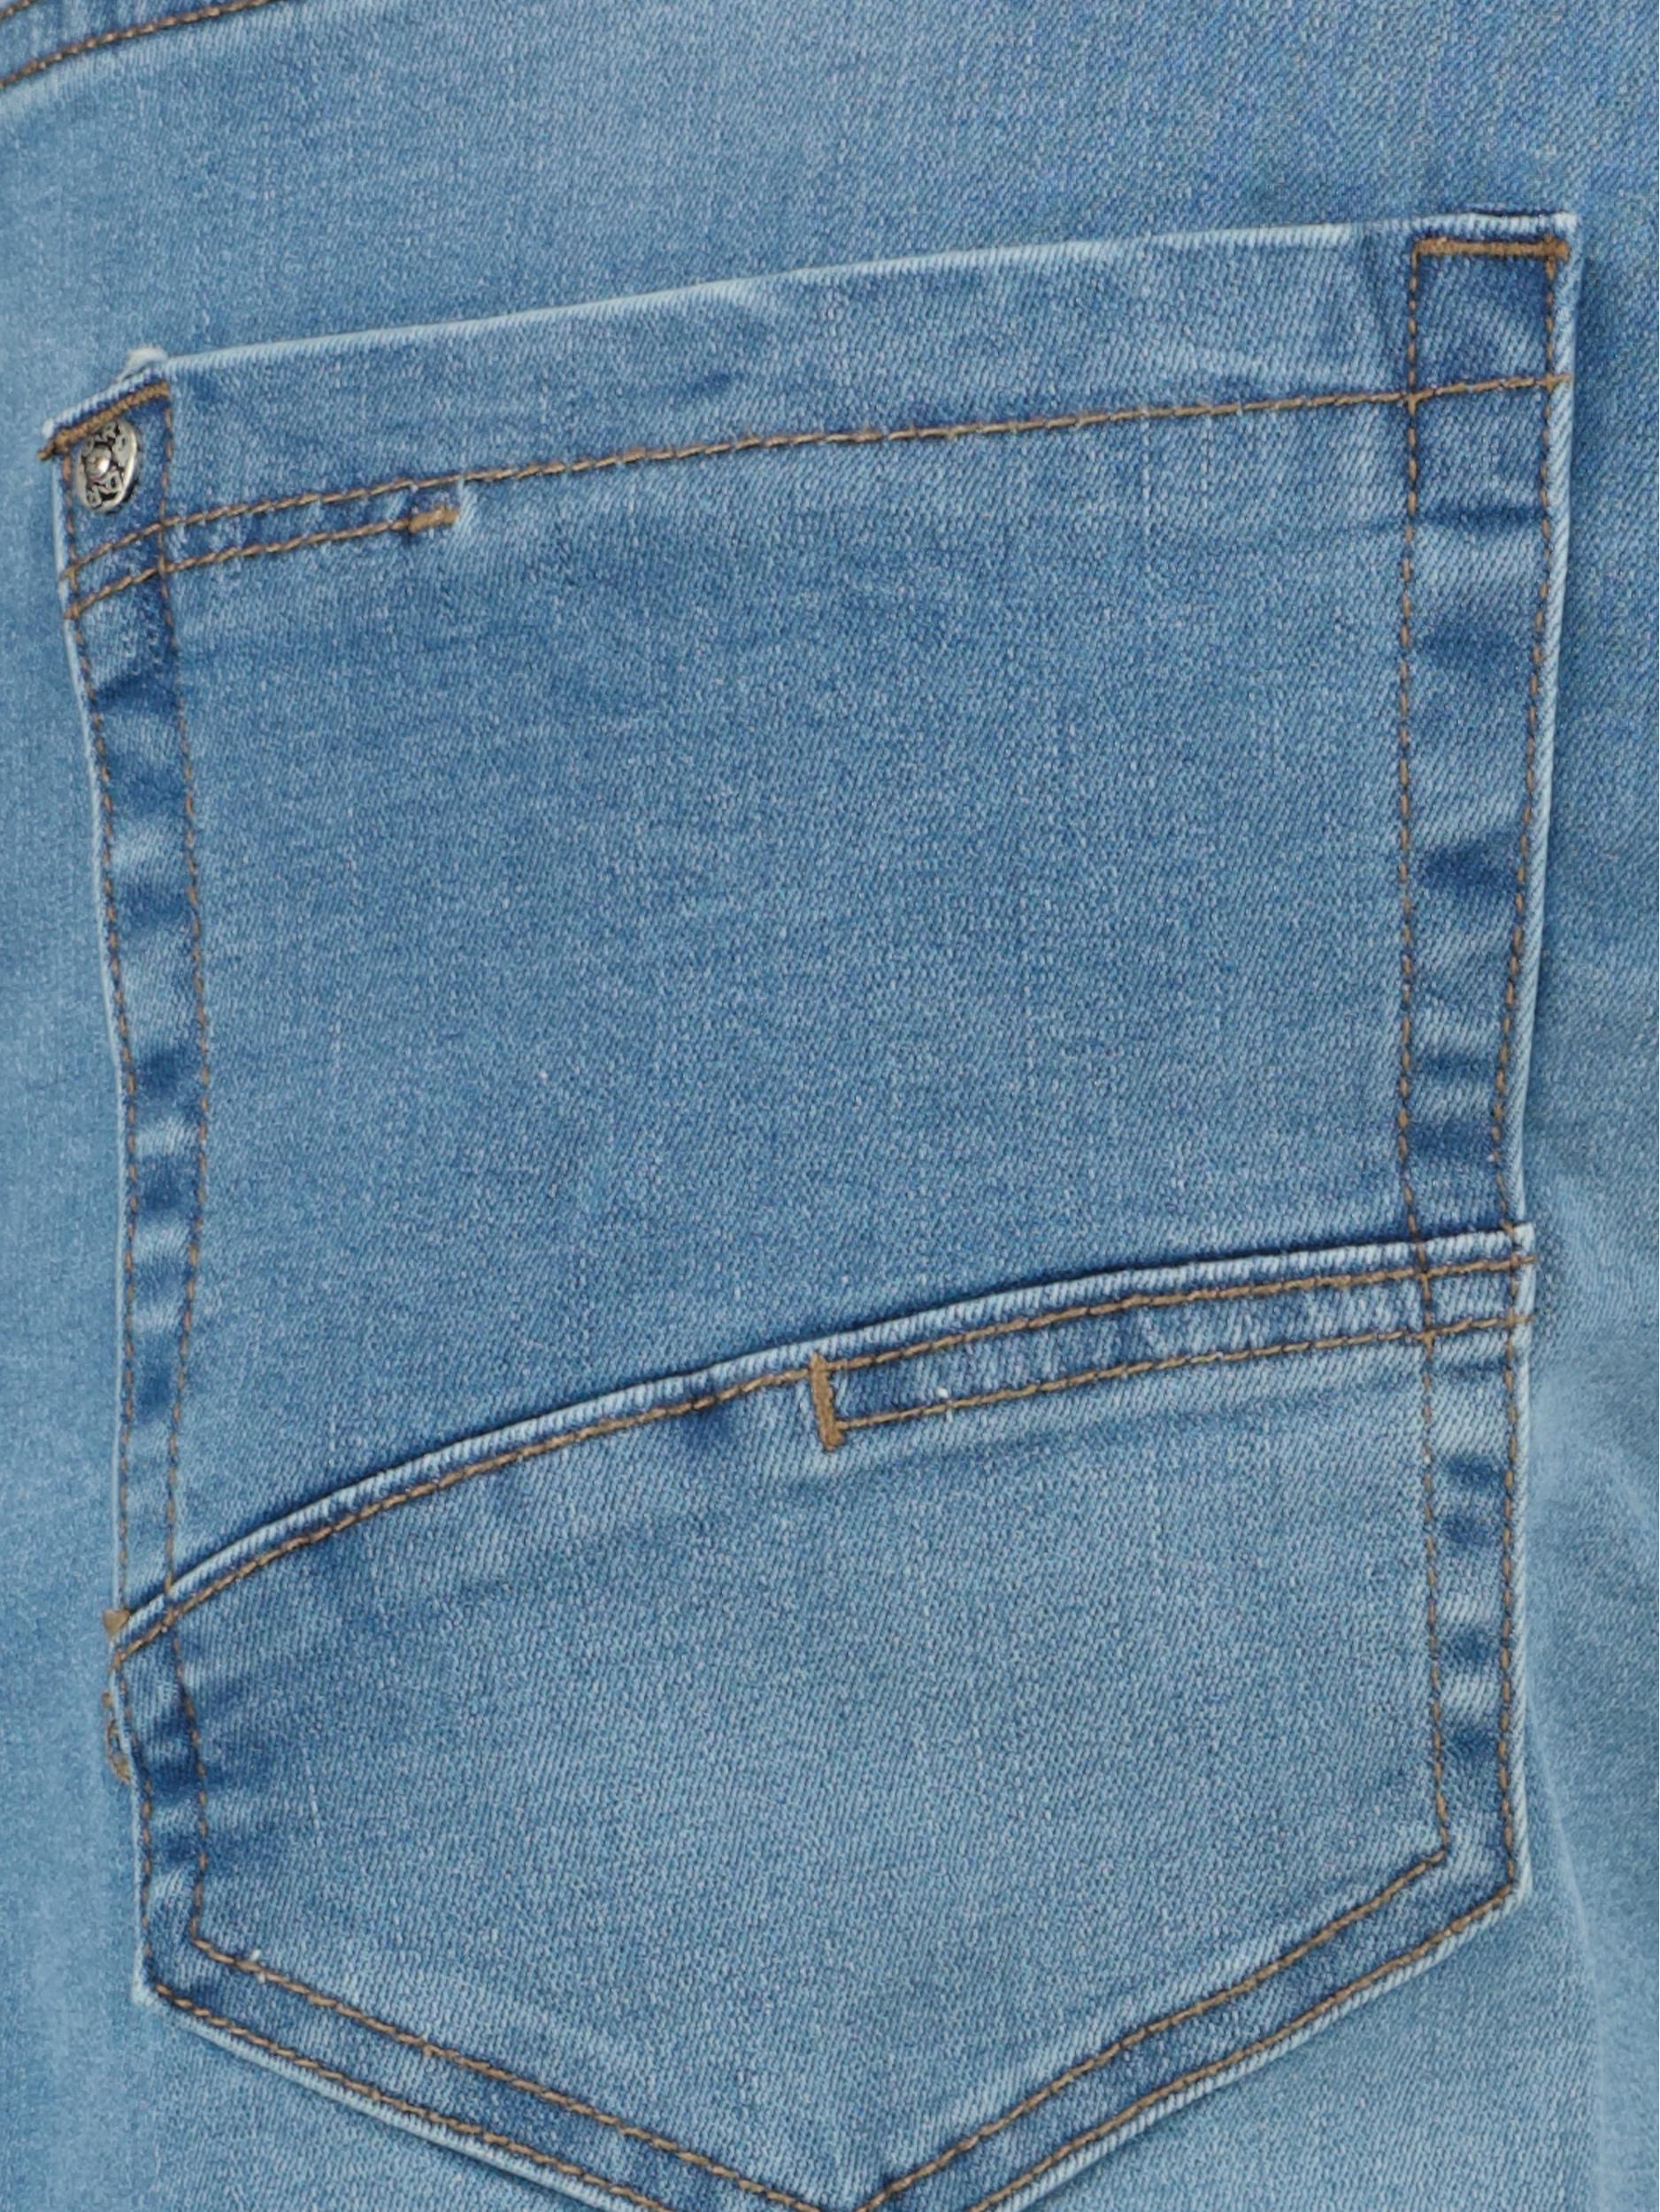 Donders 1860 Korte Broek Blauw Jeans Short 76759/730